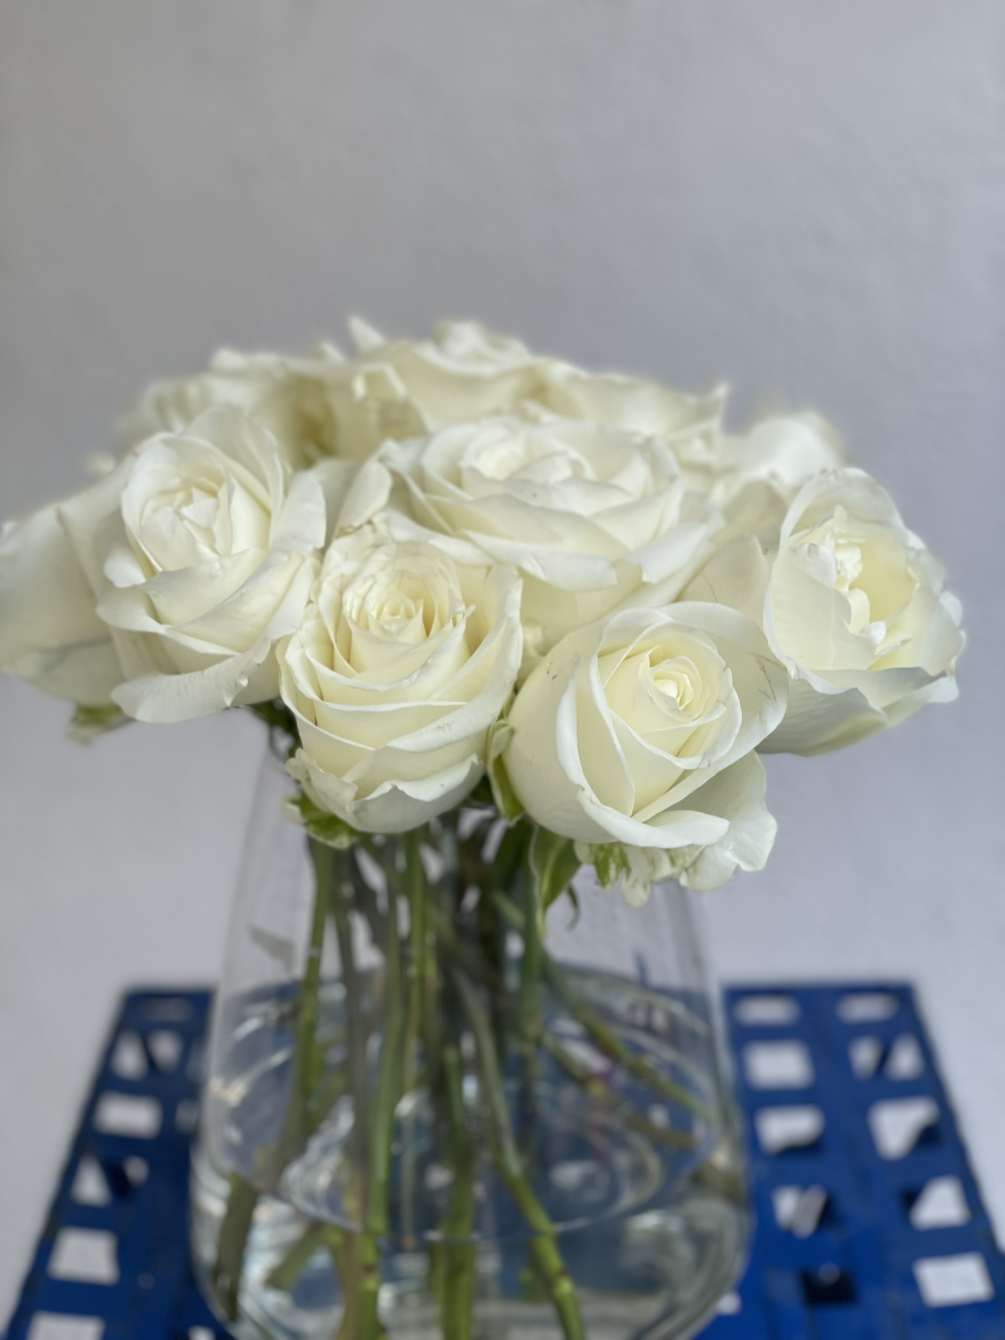 13 Beautiful, timeless long stem white roses arranged in an elegant vase